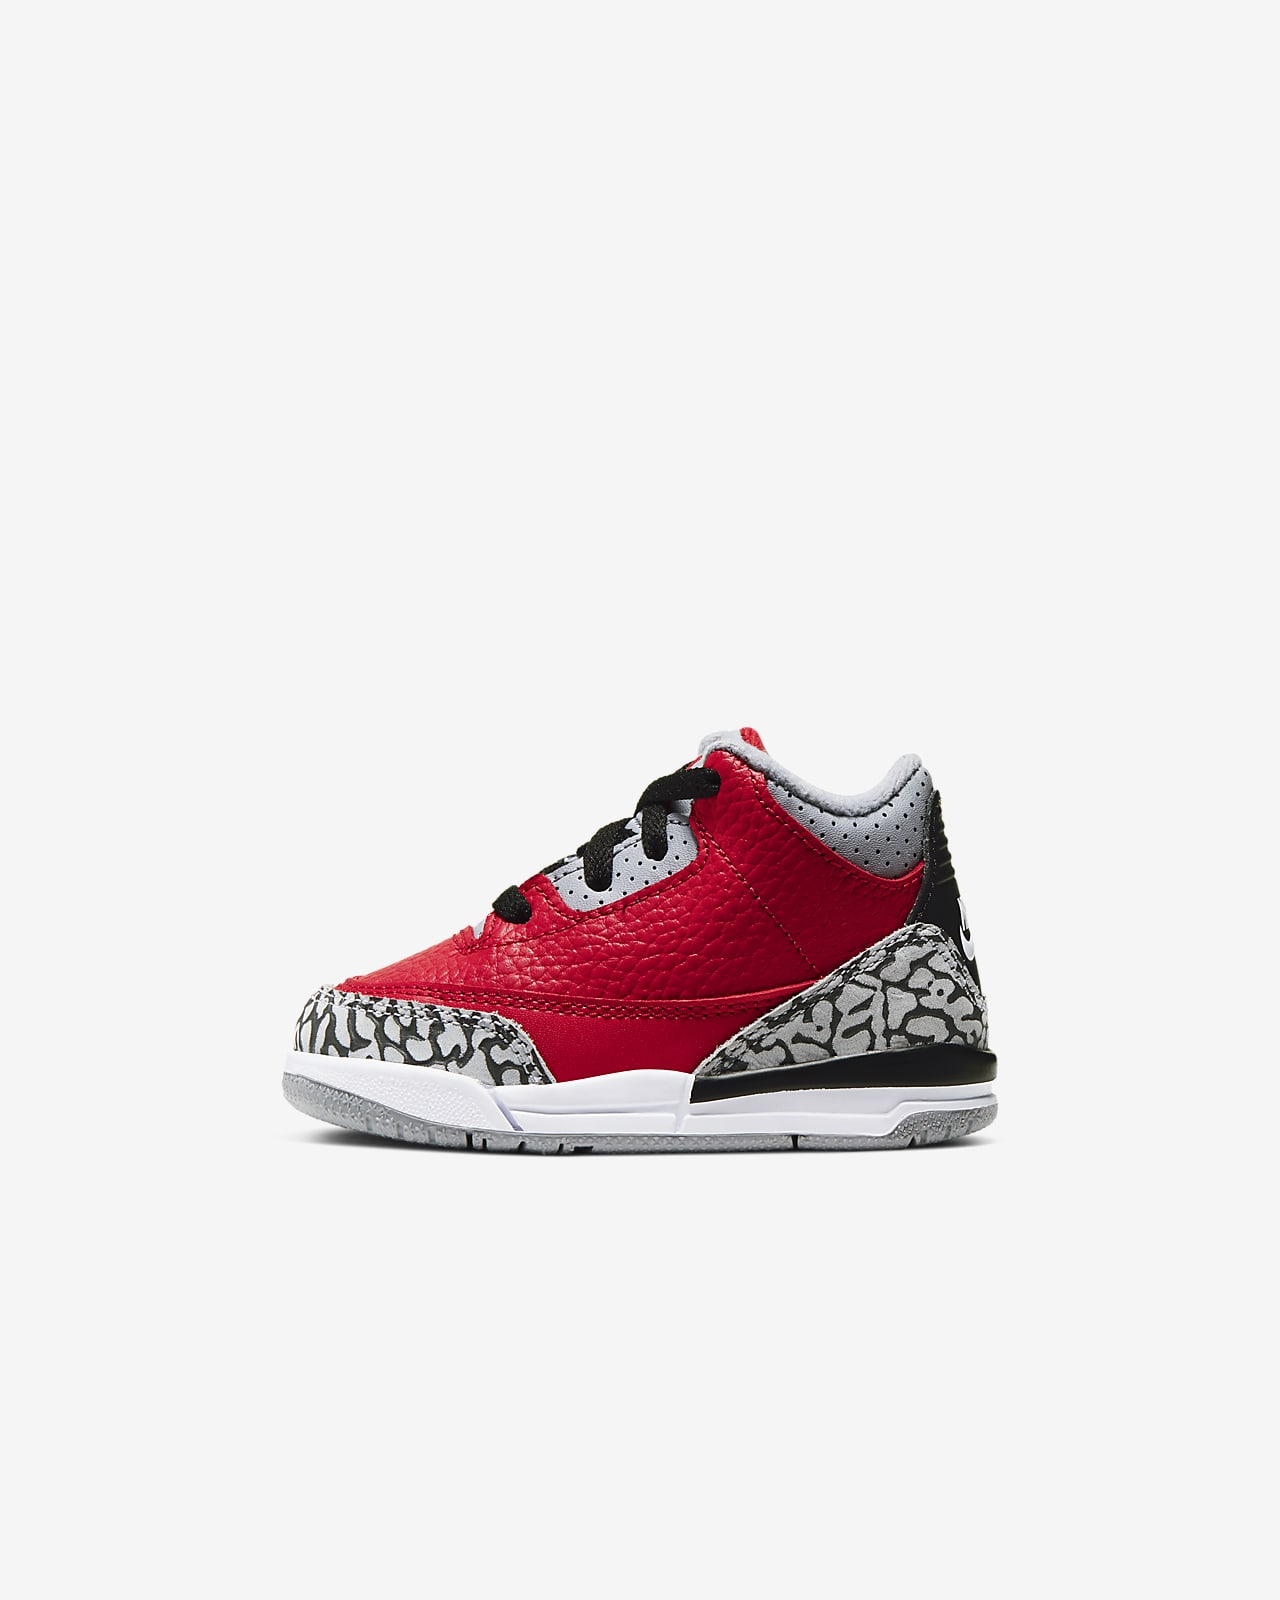 Jordan 3 Retro SE Baby/Toddler Shoe 